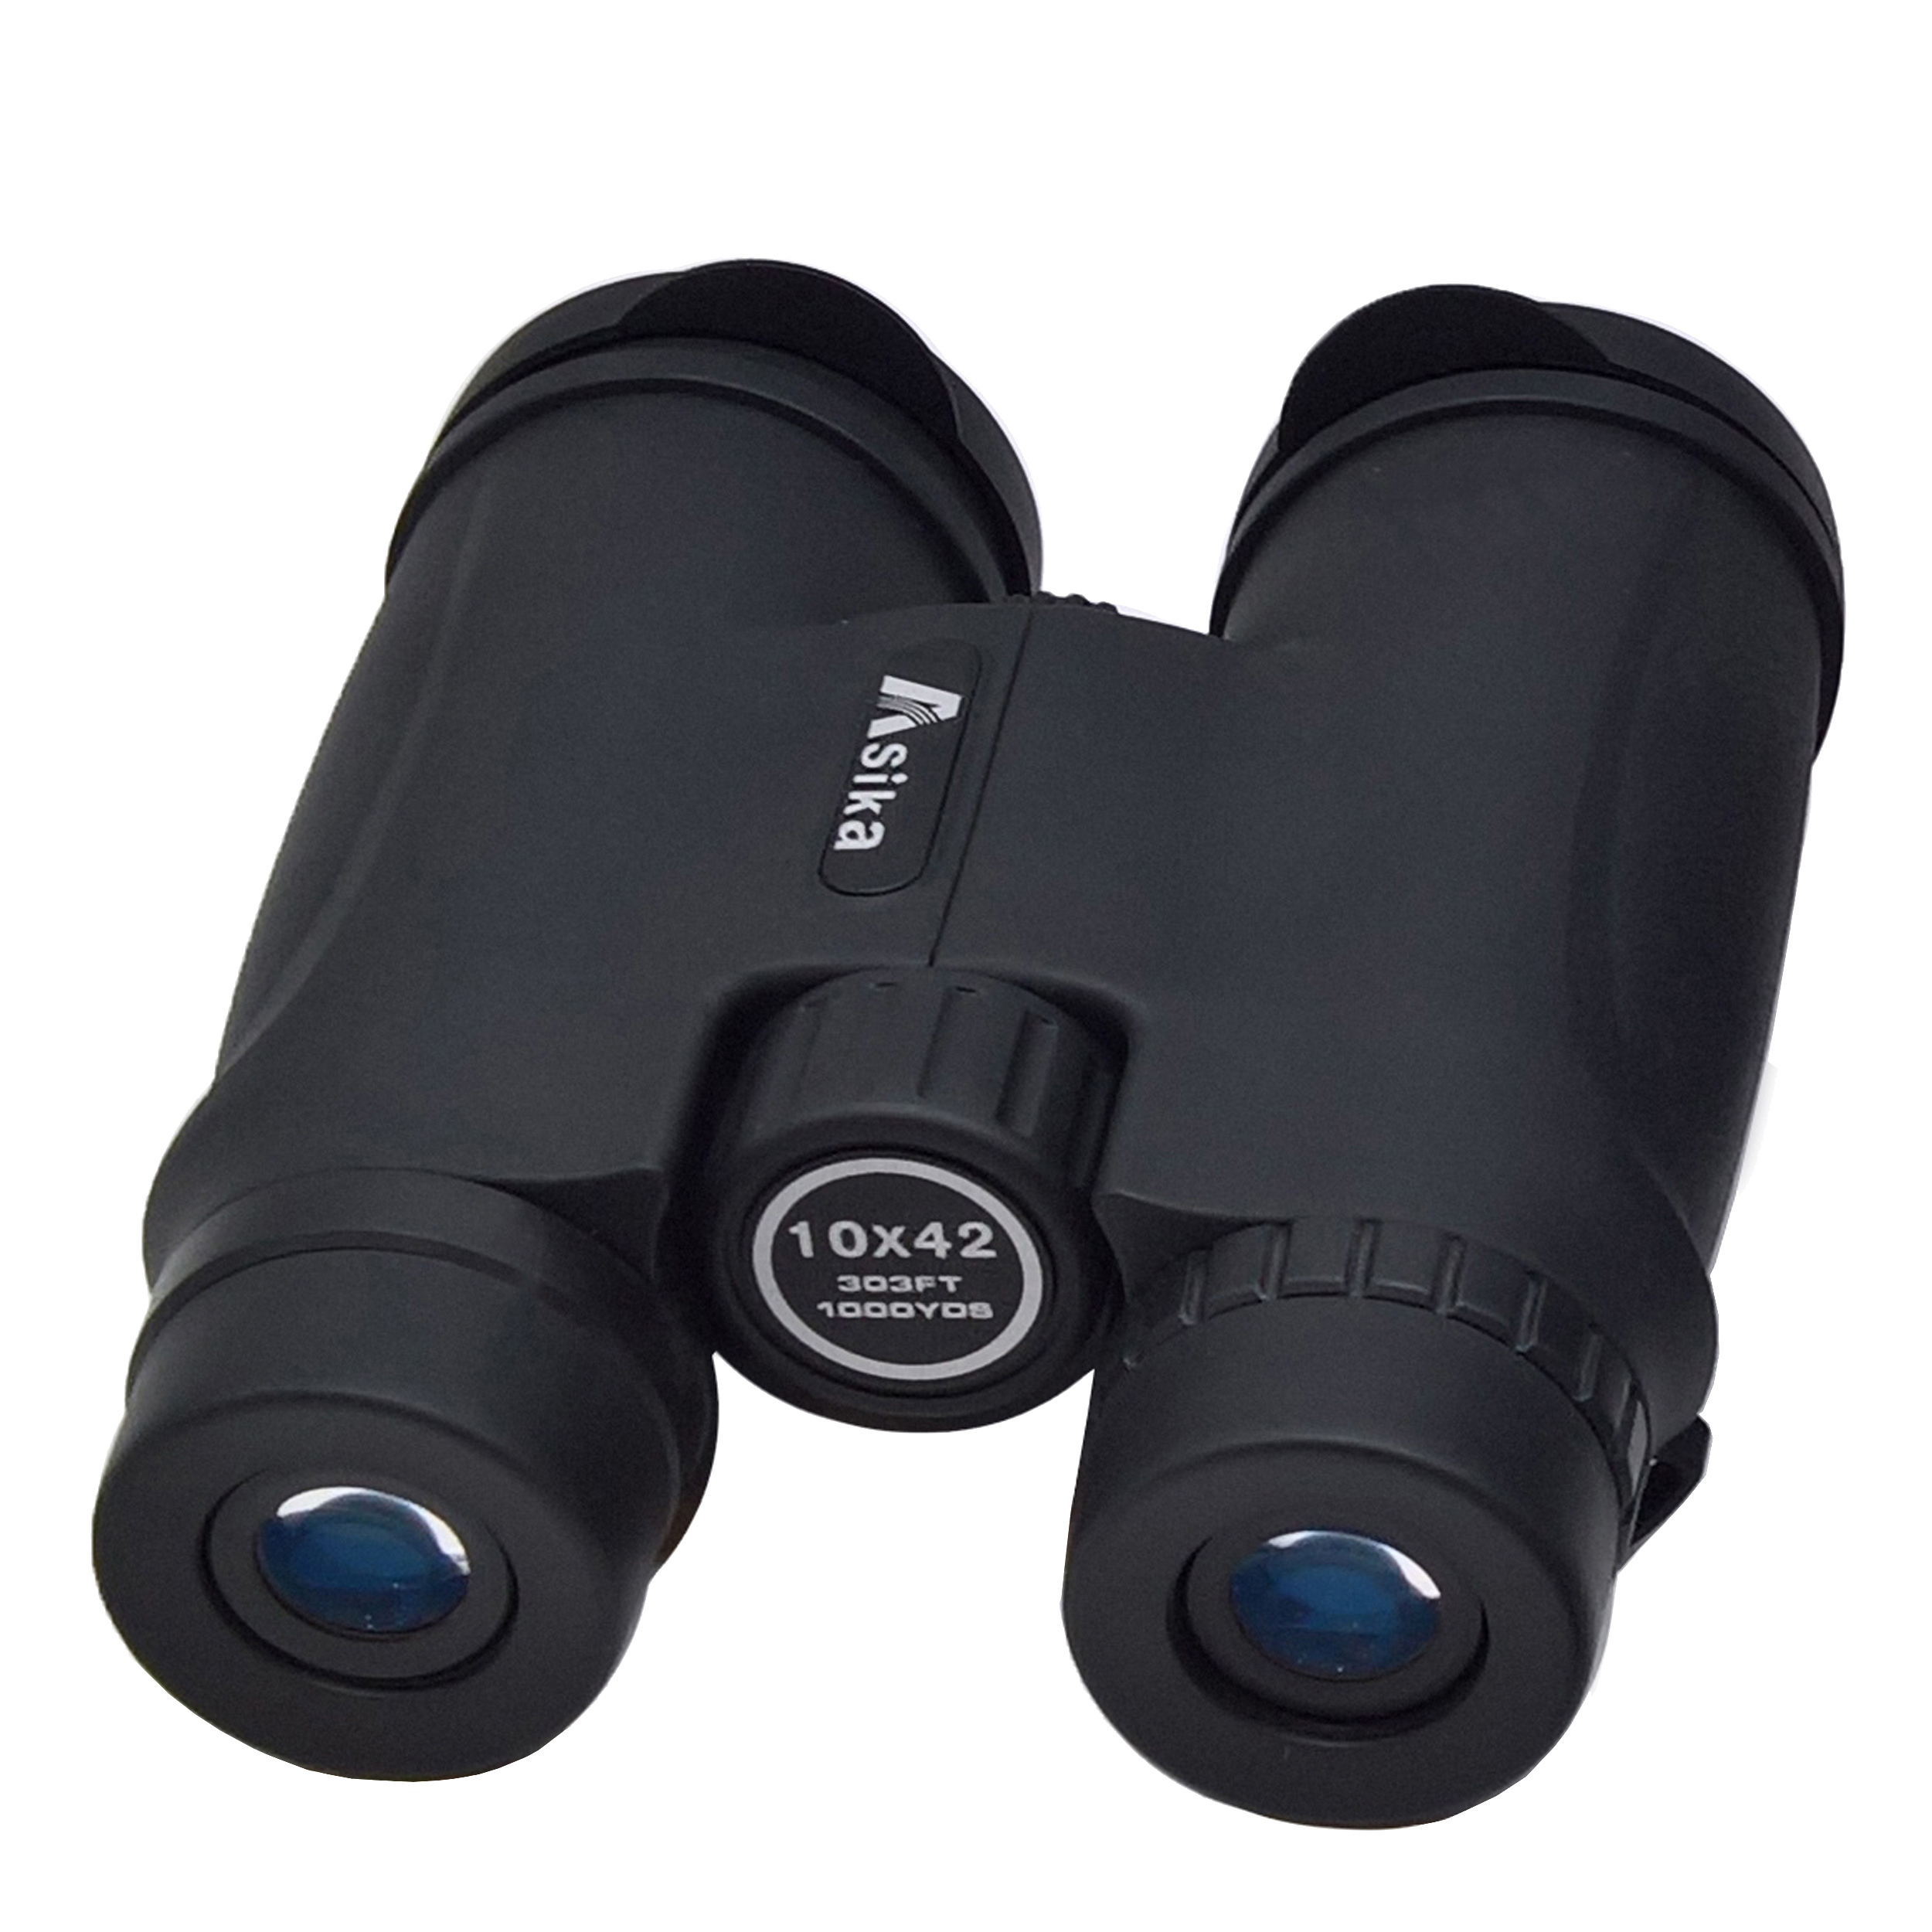 دوربین دو چشمی آسیکا مدل 42×10 303FT -  - 1